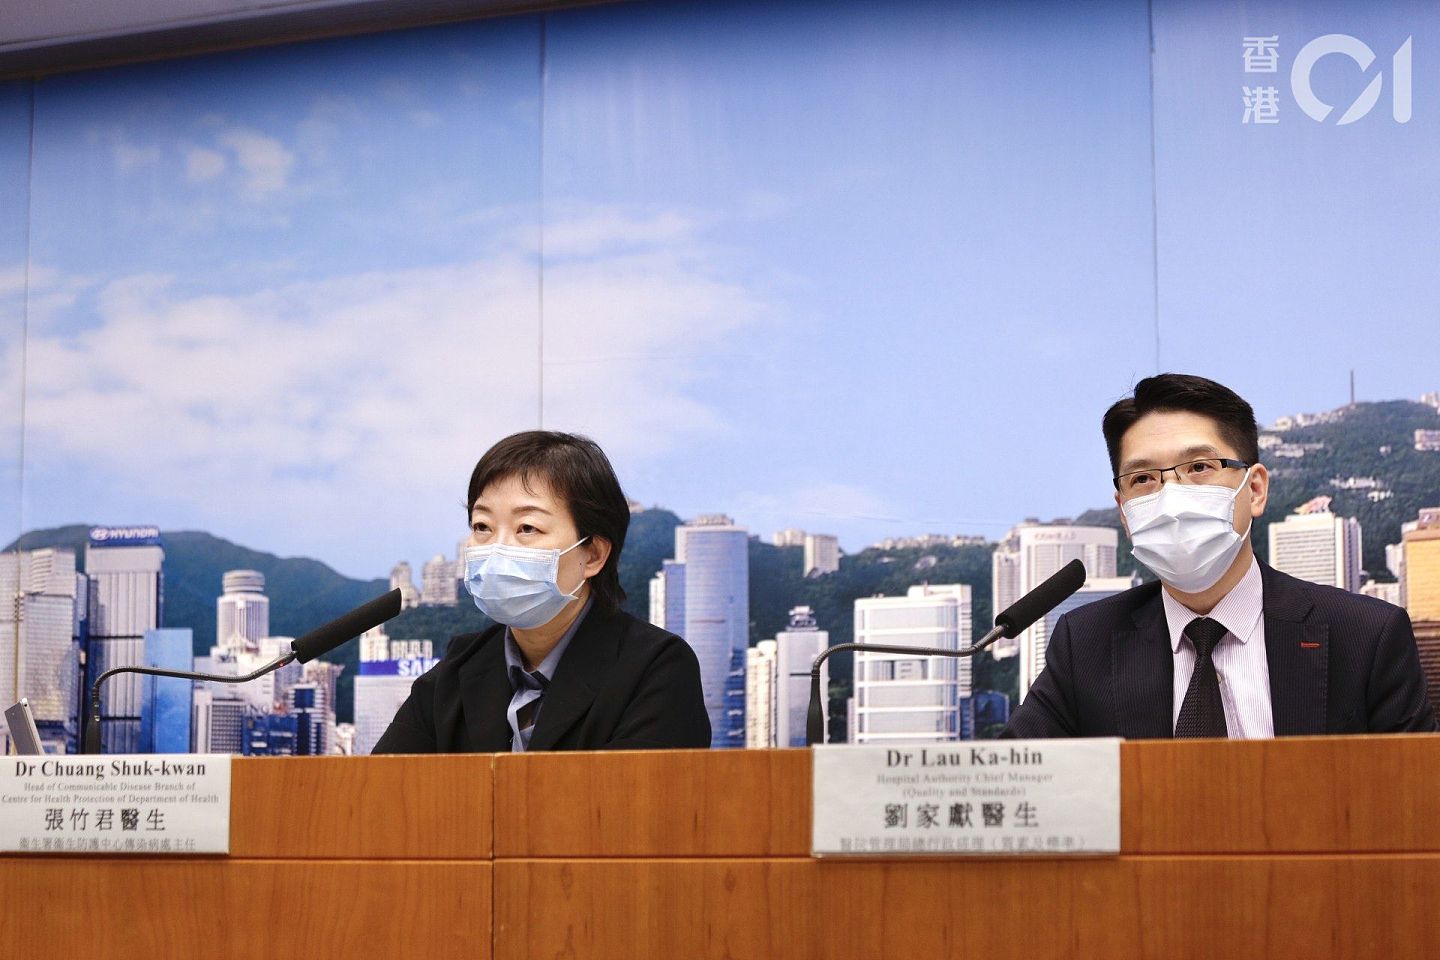 现时香港疫情防控形势仍然严峻。（HK01)